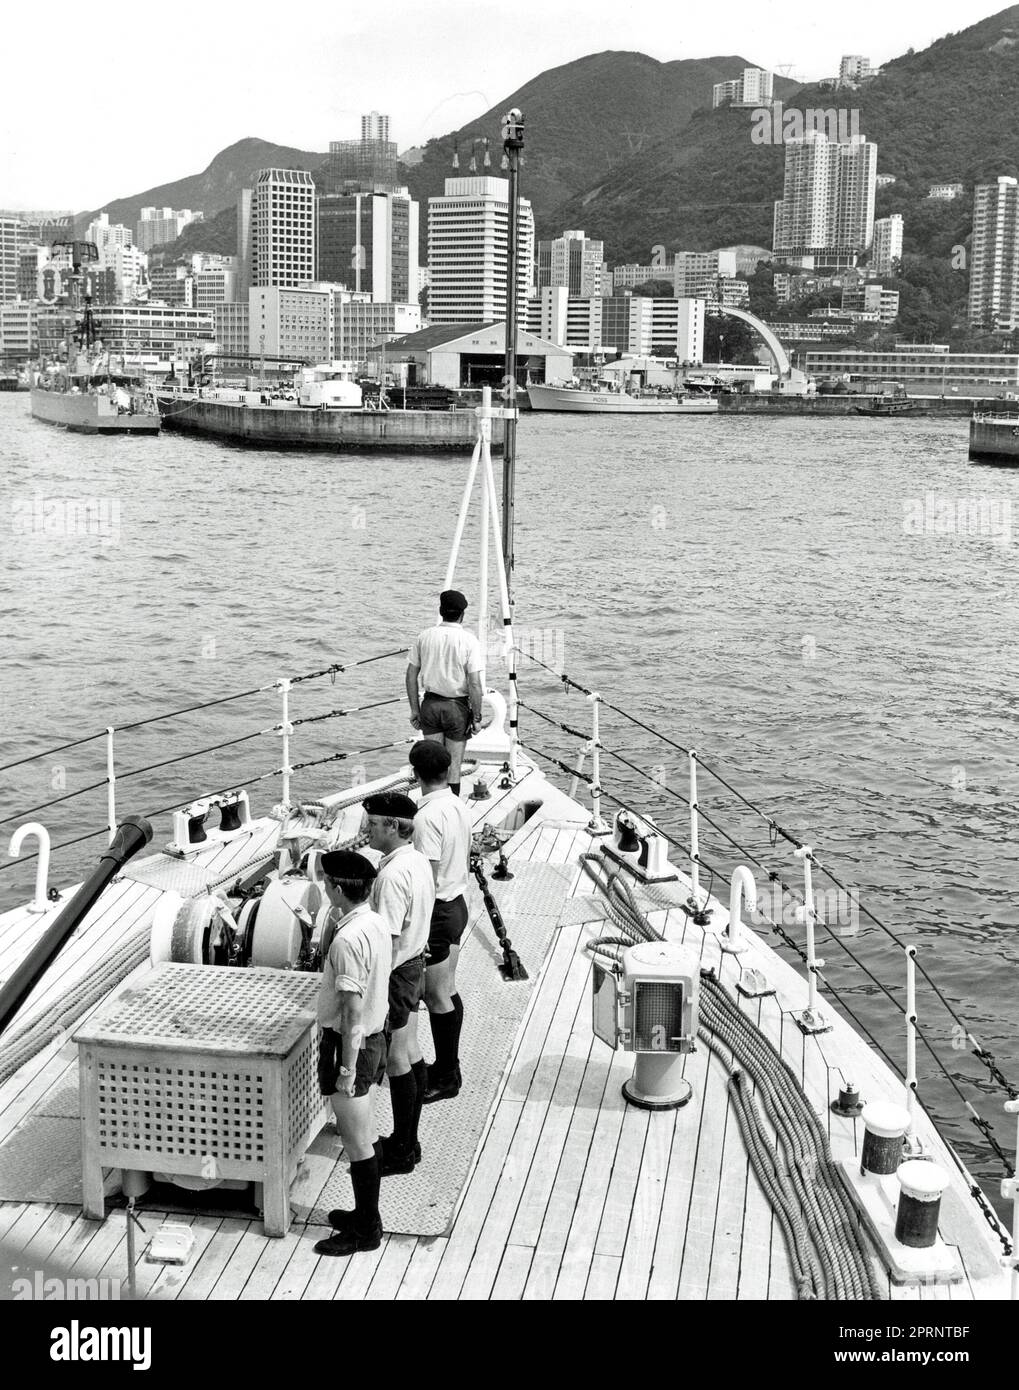 A Ton-class patrol craft of the Royal Navy's Hong Kong Squadron entering the basin at HMS Tamar, RN shore base in Hong Kong, after a patrol in 1976. Stock Photo